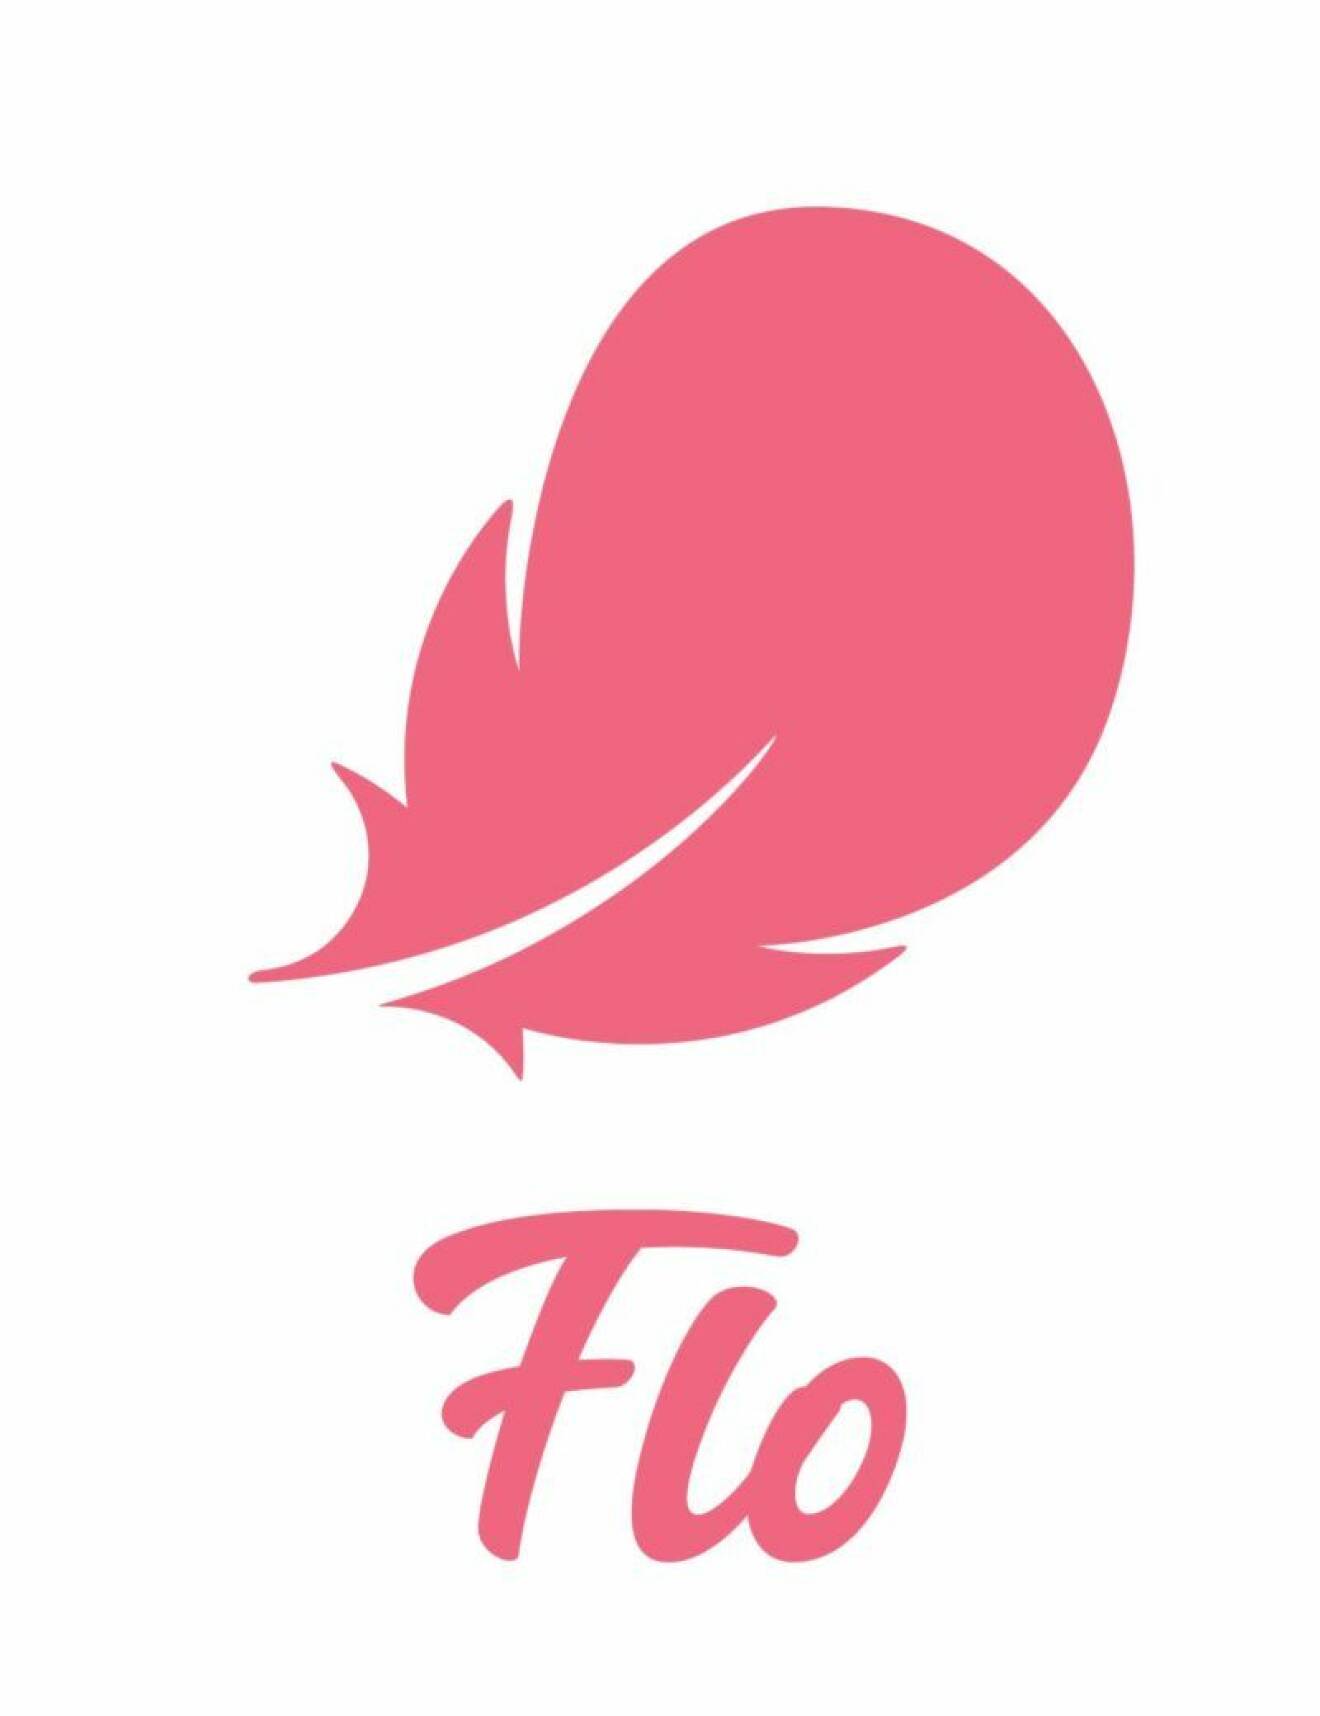 Flo hjälper dig tracka mens, ägglossning och humör i din menscykel. 